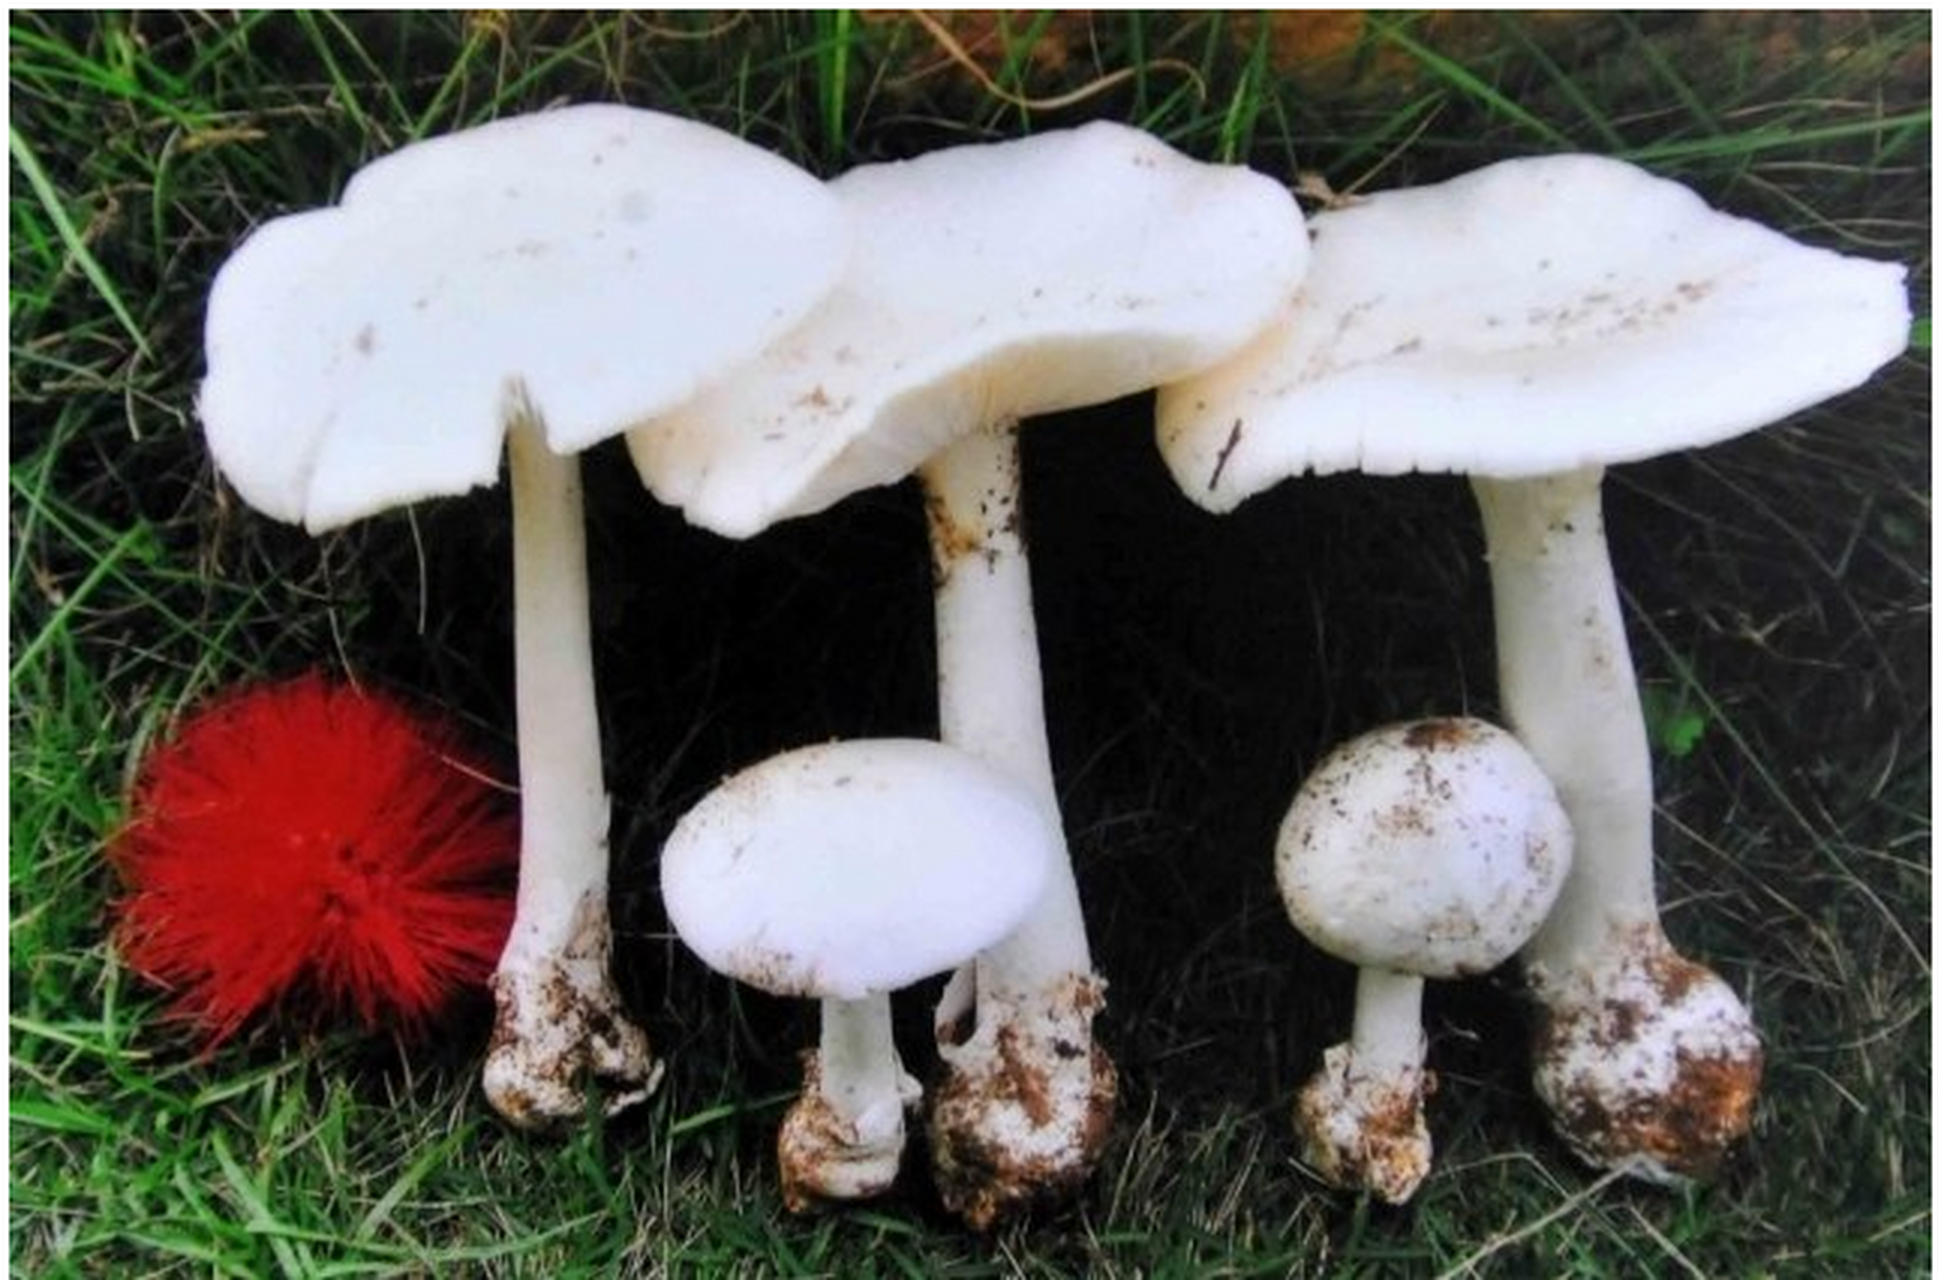 毁灭天使菌蘑菇图片